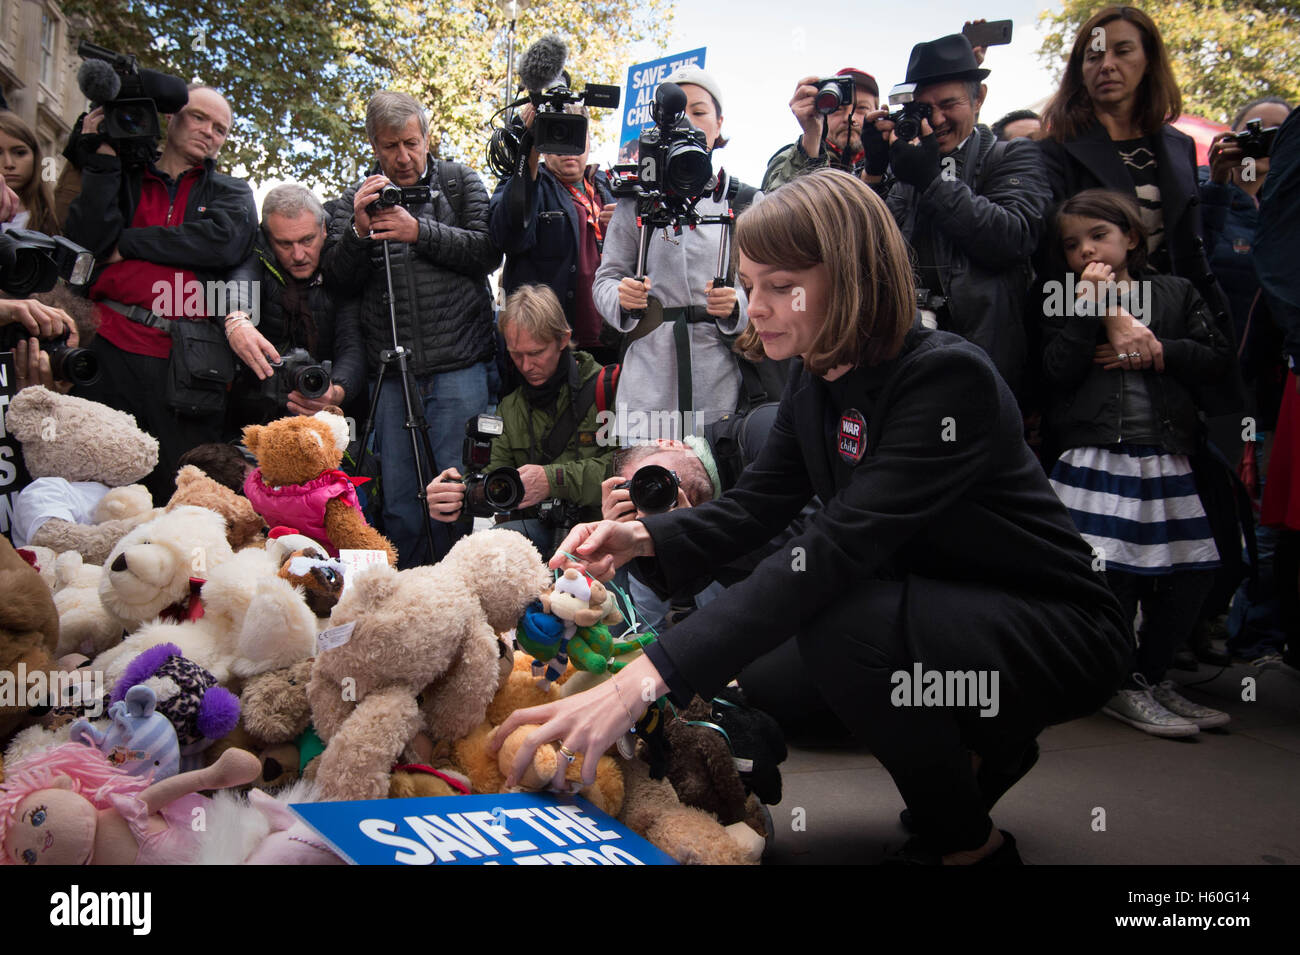 L'attrice Carey Mulligan lascia un orsacchiotto fuori dai cancelli di Downing Street nel centro di Londra durante una manifestazione di protesta per evidenziare il numero elevato di bambini morti in attentati in Siria e per chiedere al governo di intervenire su russo e siriano campagne di bombardamenti. Foto Stock